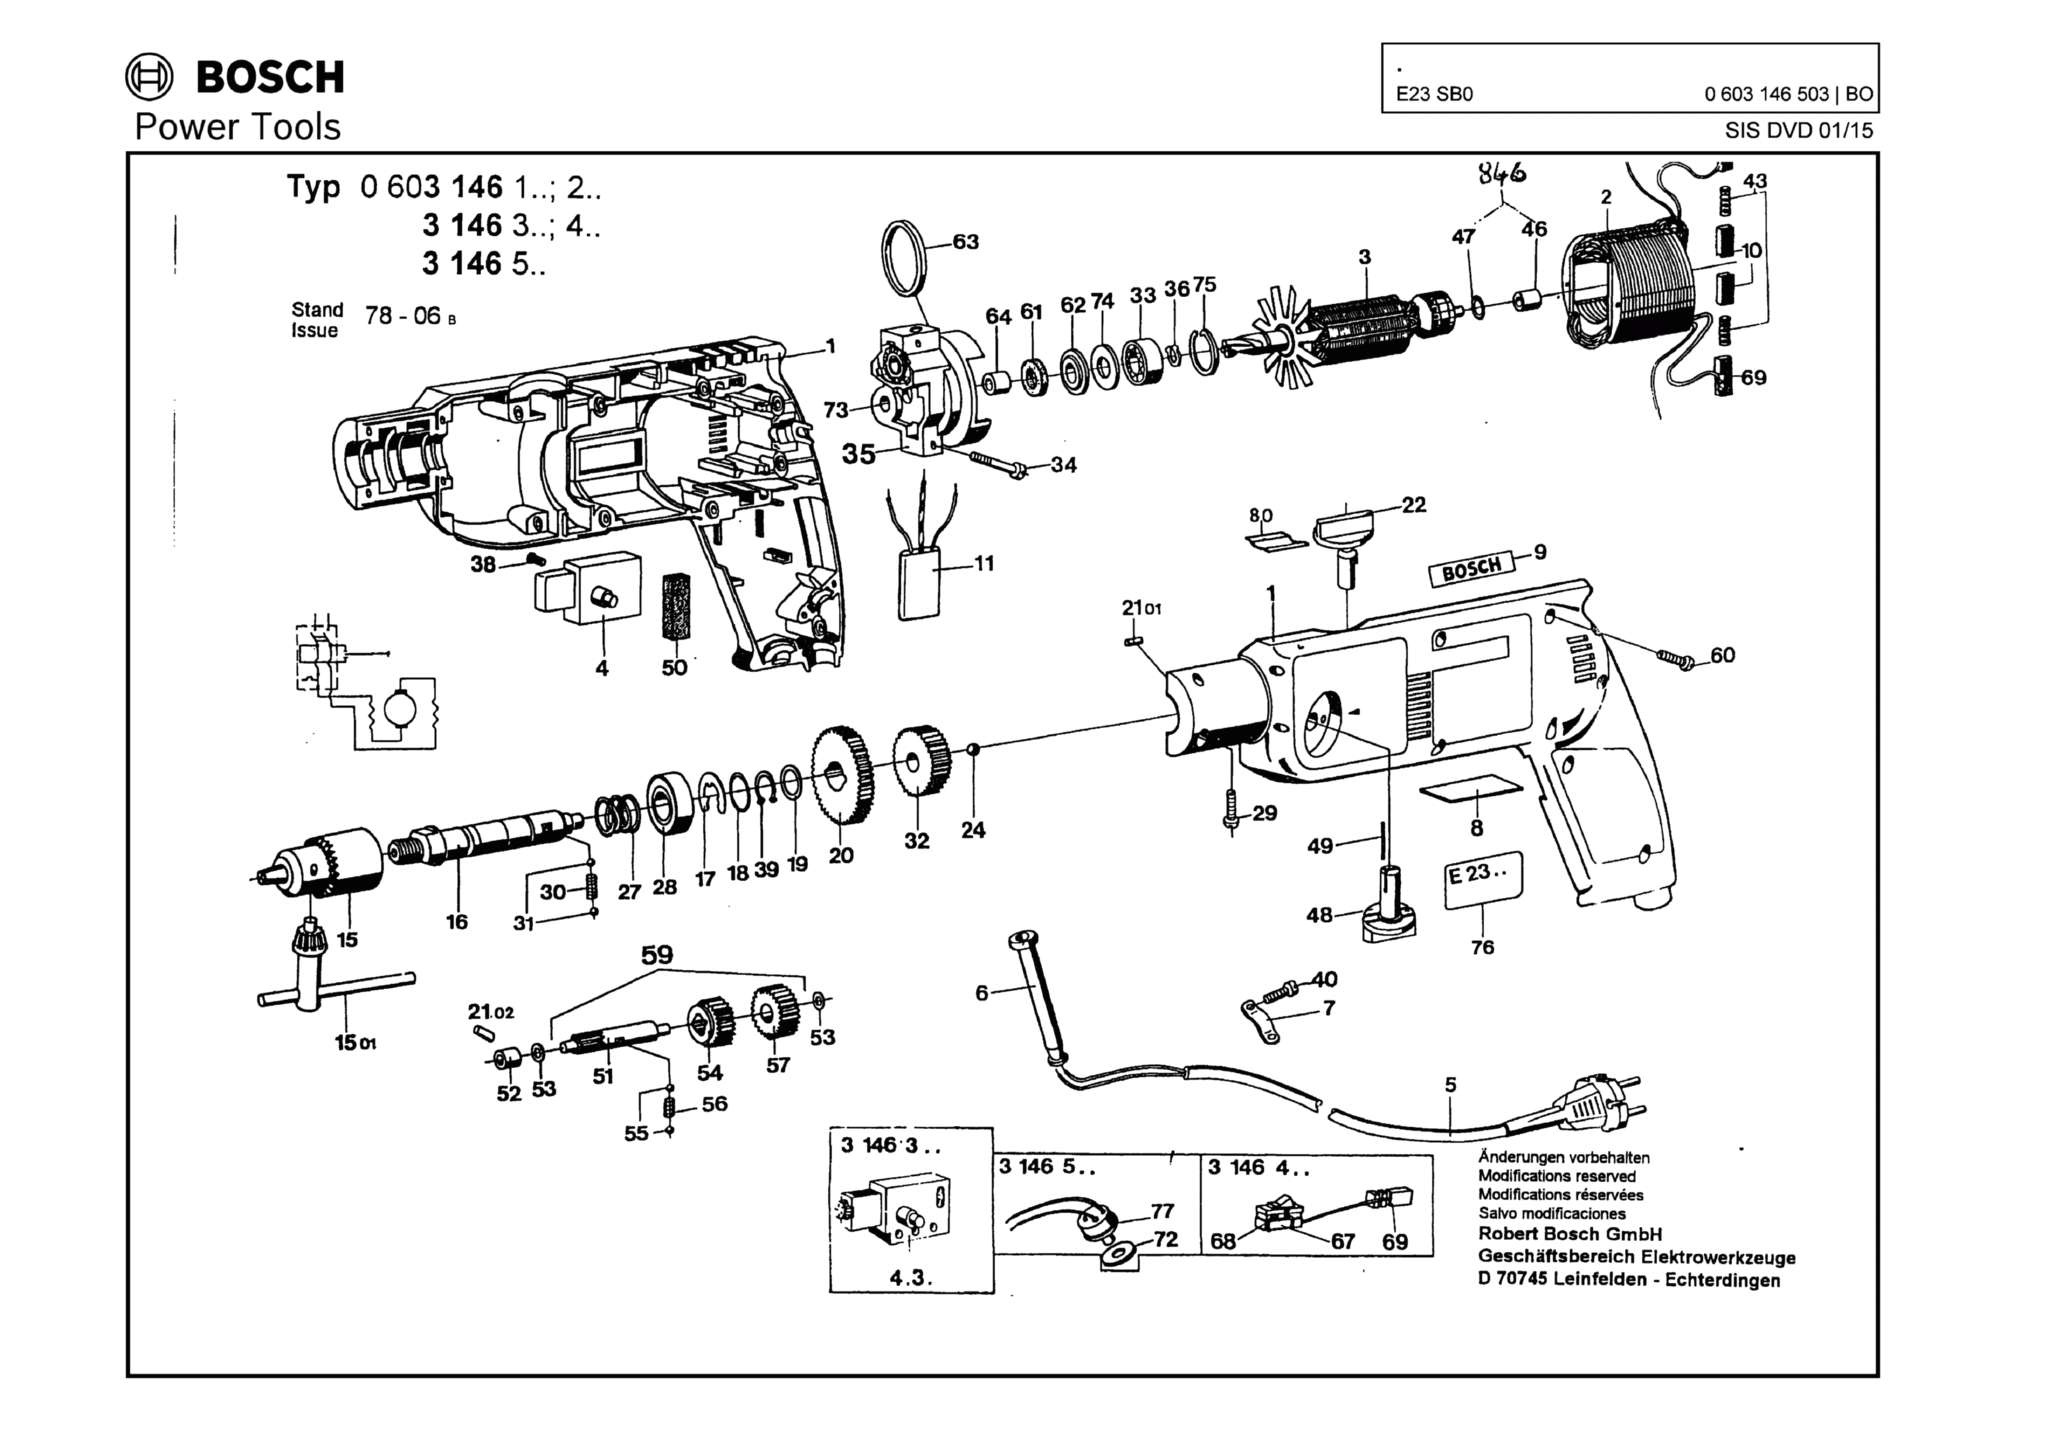 Запчасти, схема и деталировка Bosch E23 SB0 (ТИП 0603146503)